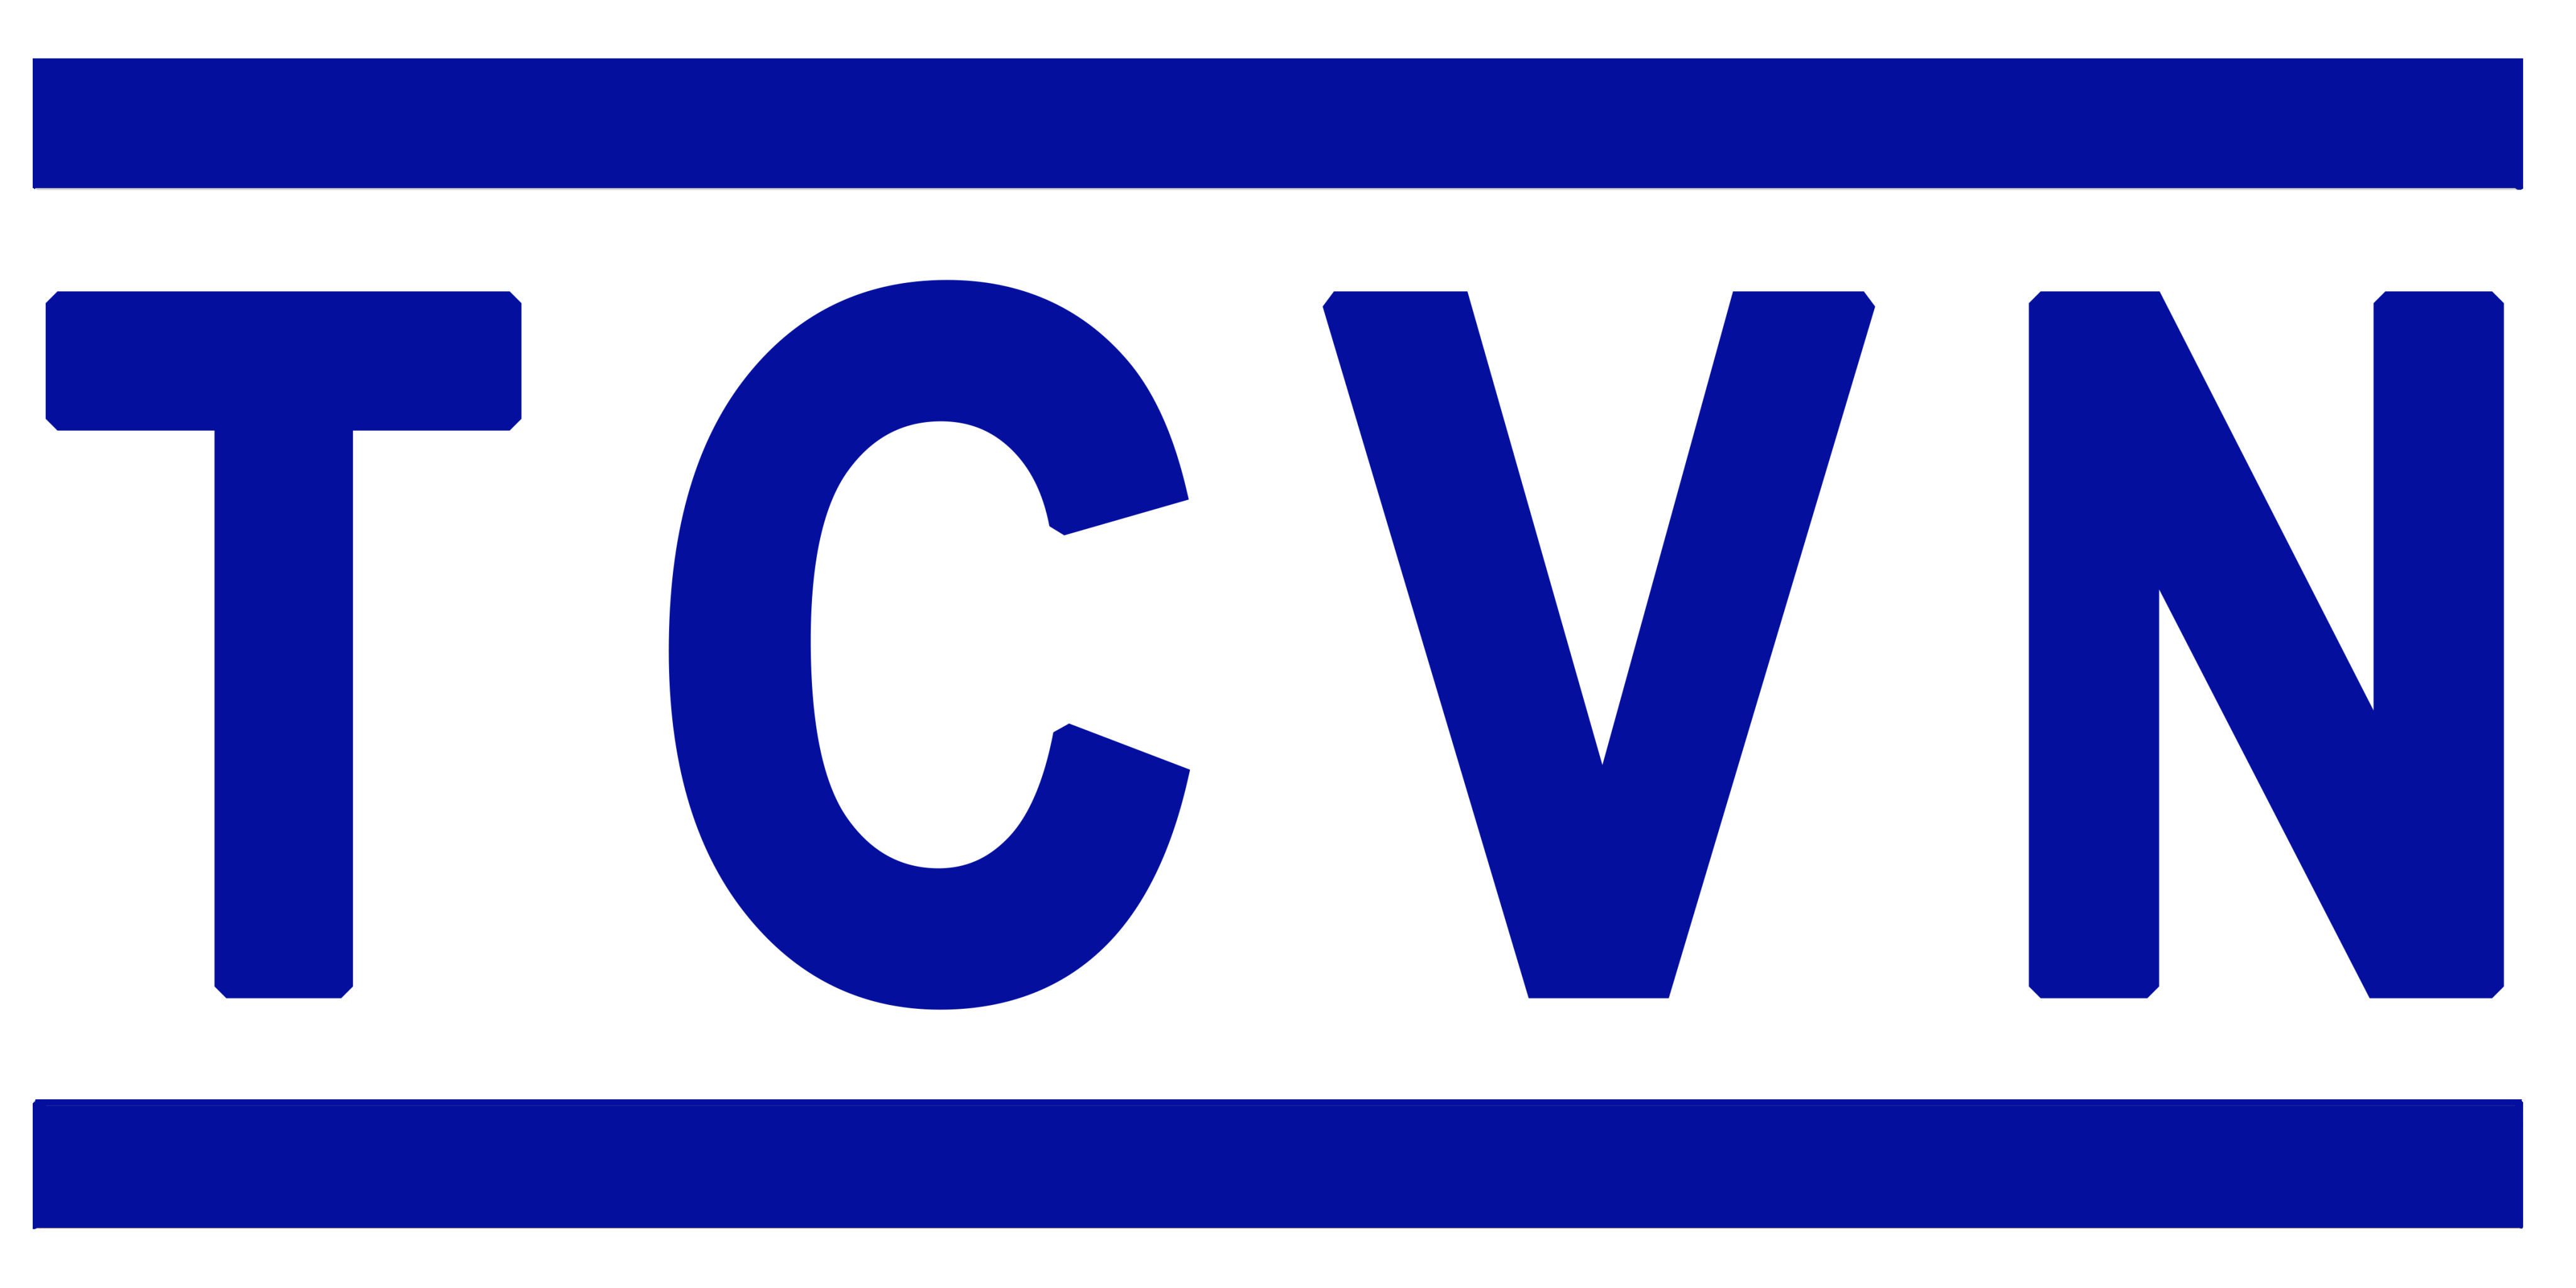 Danh mục tiêu chuẩn Quốc Gia (TCVN) công bố tháng 5 năm 2021